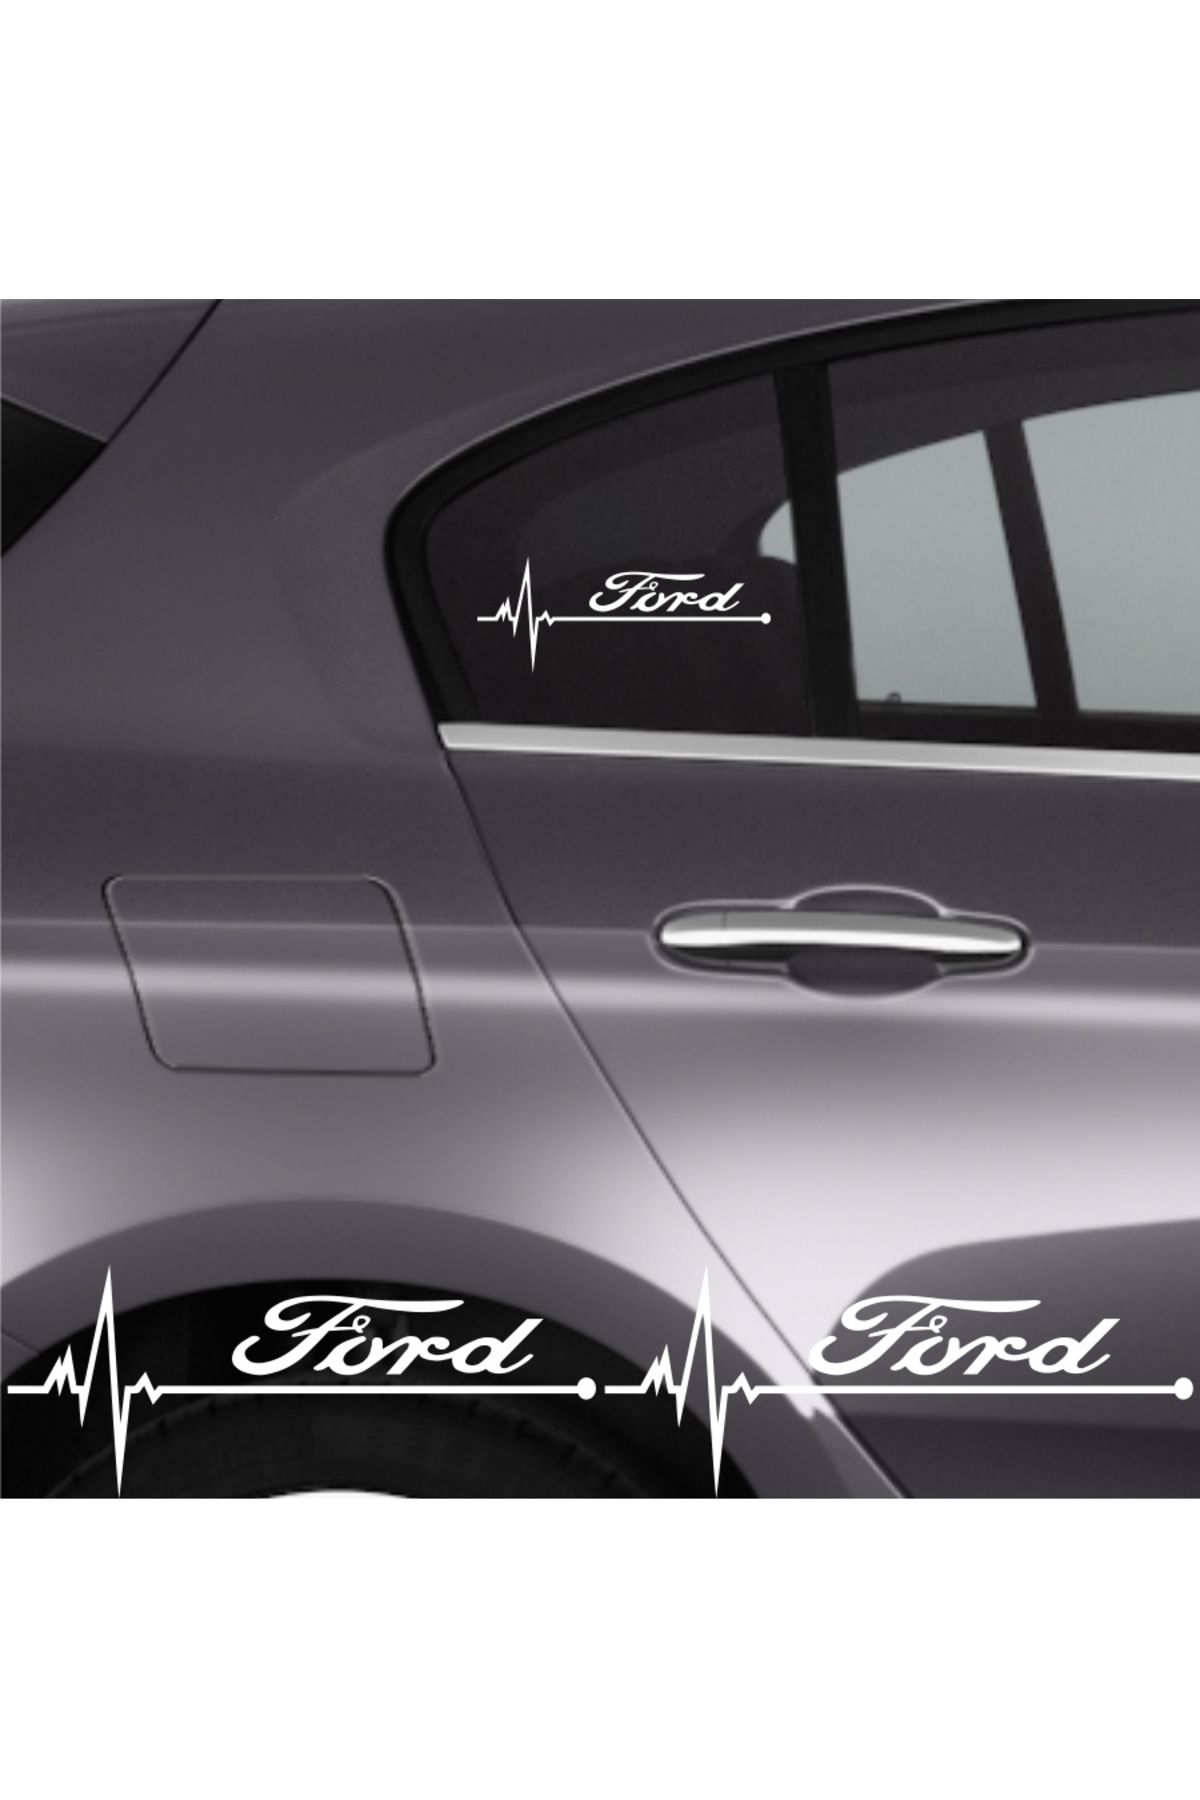 Genel Markalar Ford İçin Özel Yeni Tasarım uyumlu Aksesuar Oto Ritim Özel Yeni Tasarım sticker 2 Adet 20*9 Cm